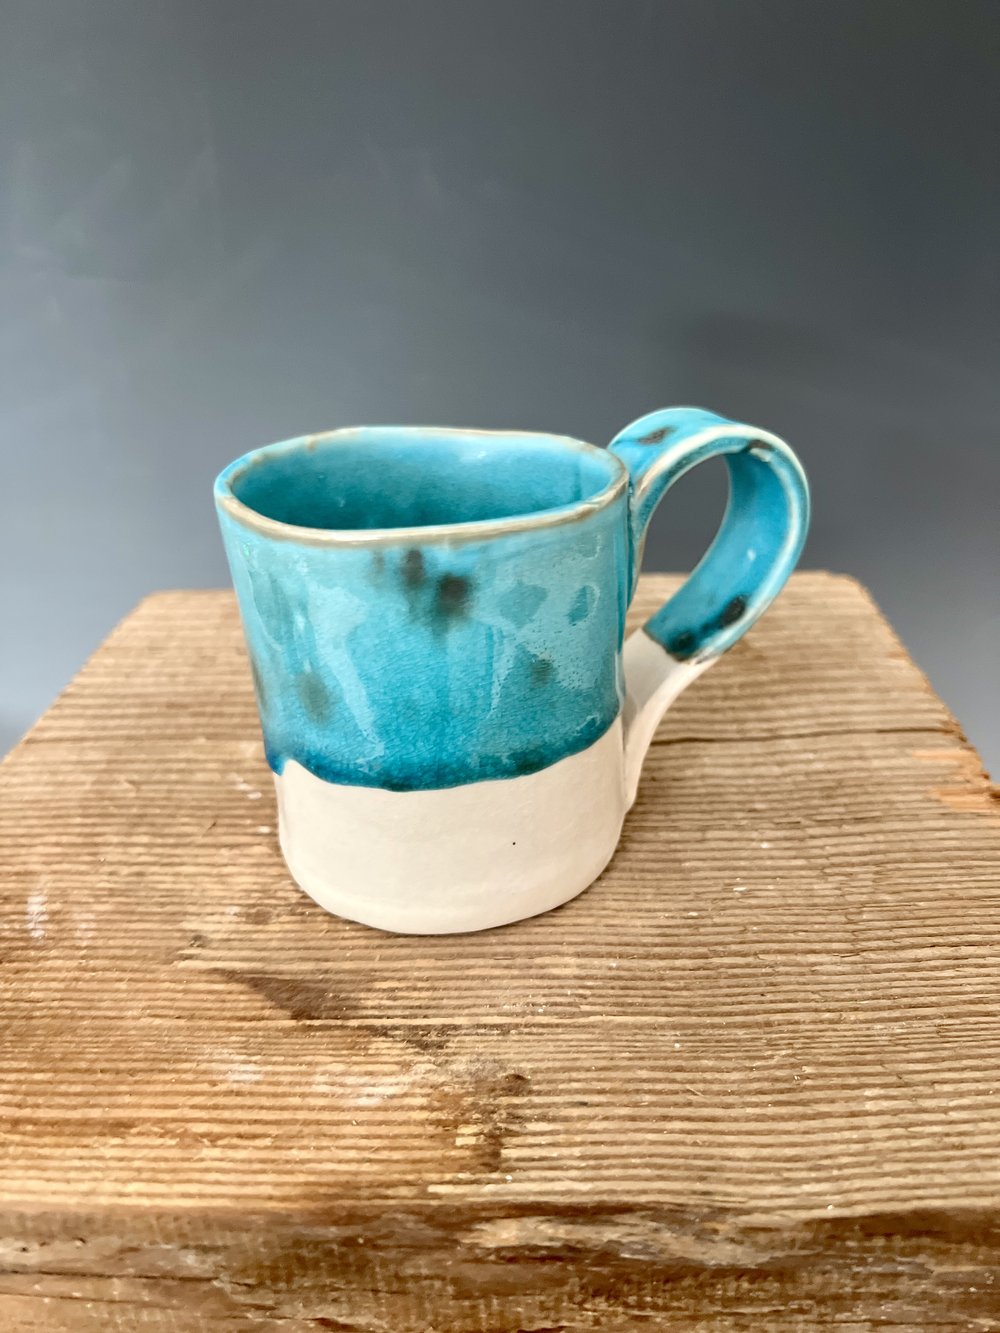 Colourful Ceramic Cappuccino Coffee Cups